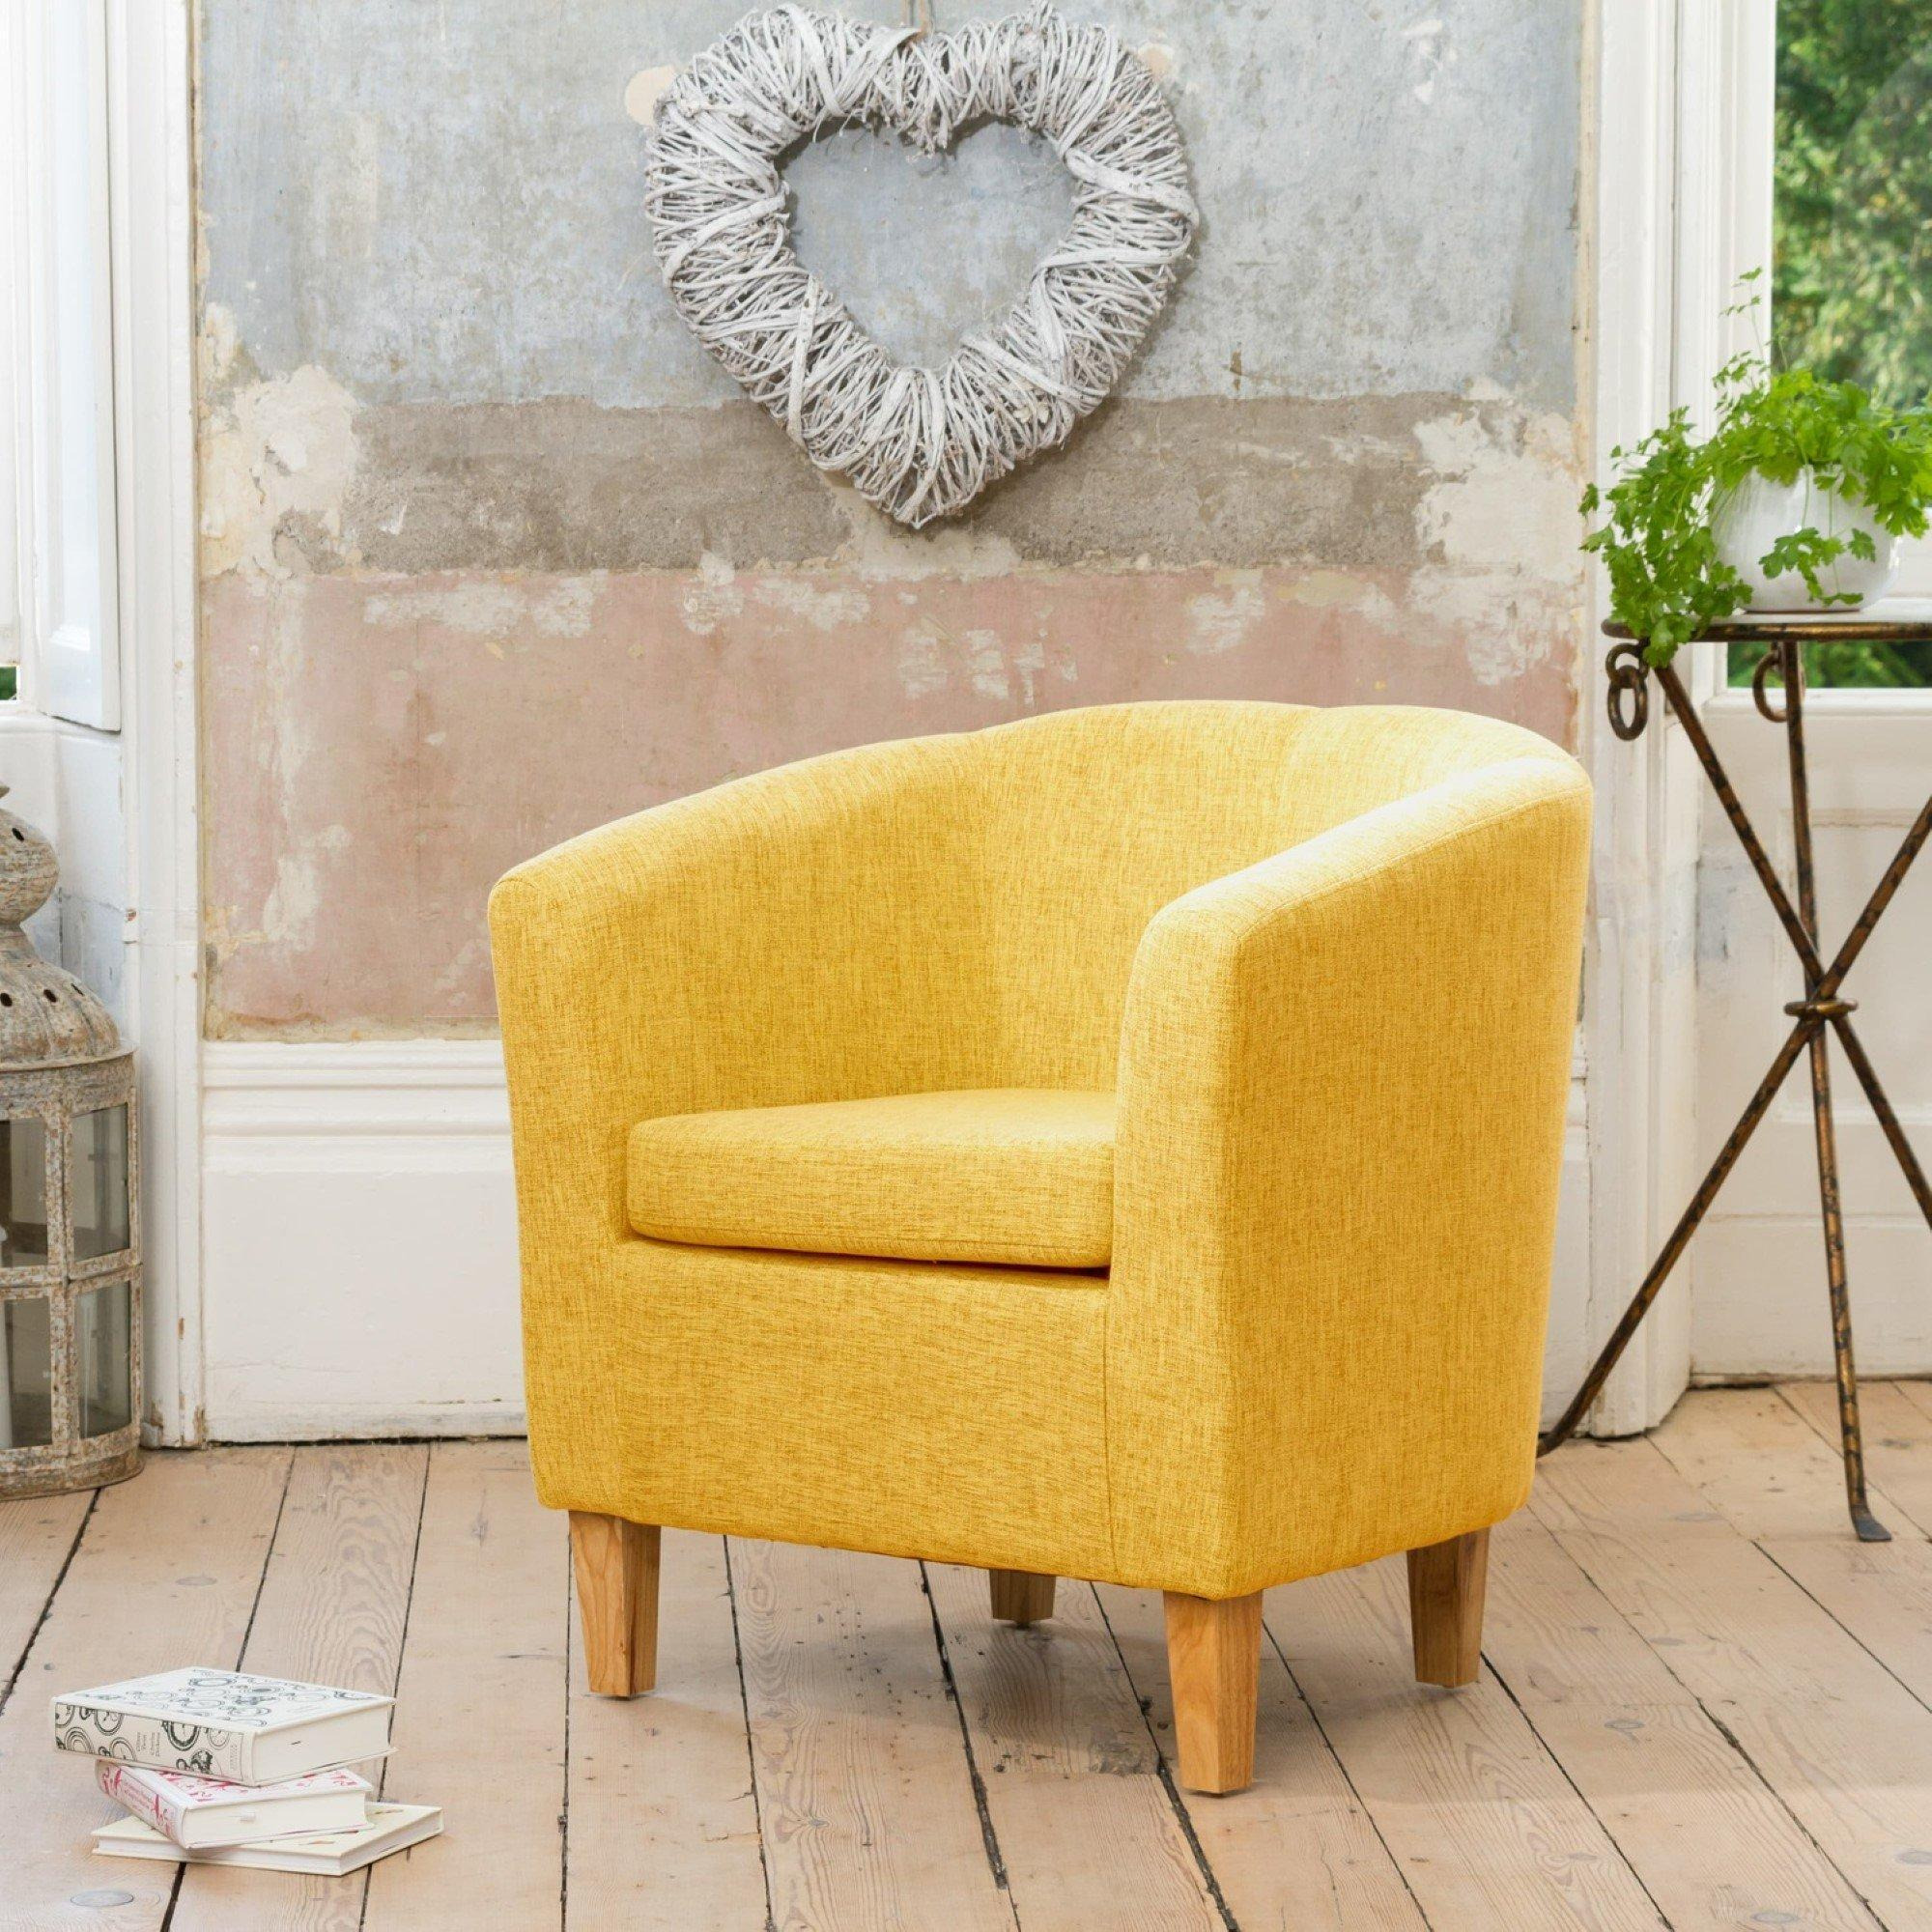 Alderwood 68cm Wide Fabric Tub Chair Armchair